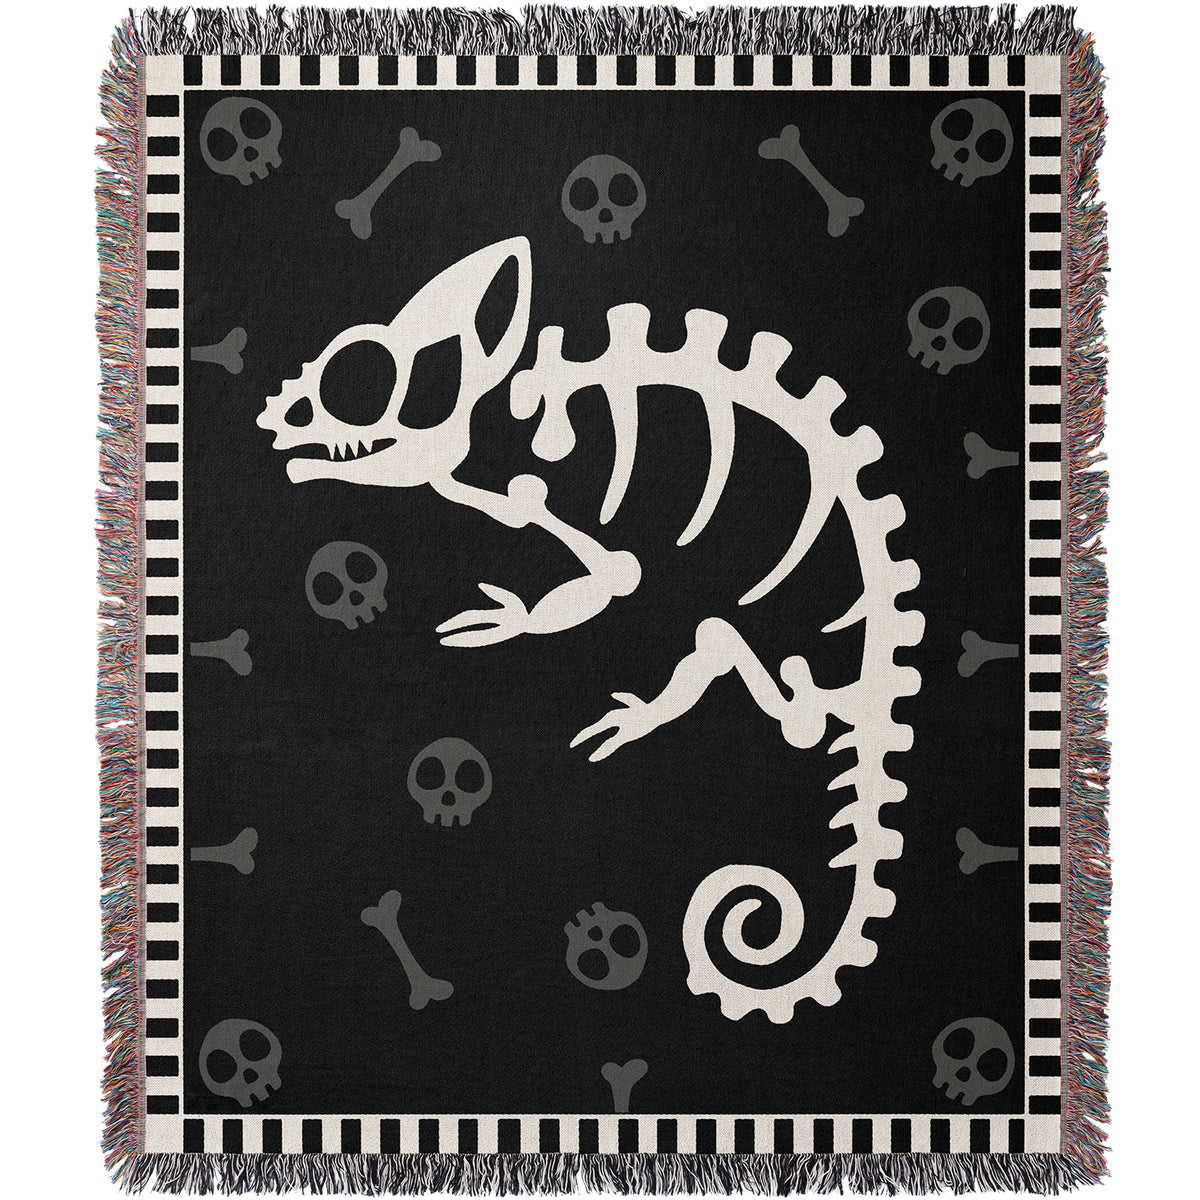 Chameleon Skeleton Woven Blanket